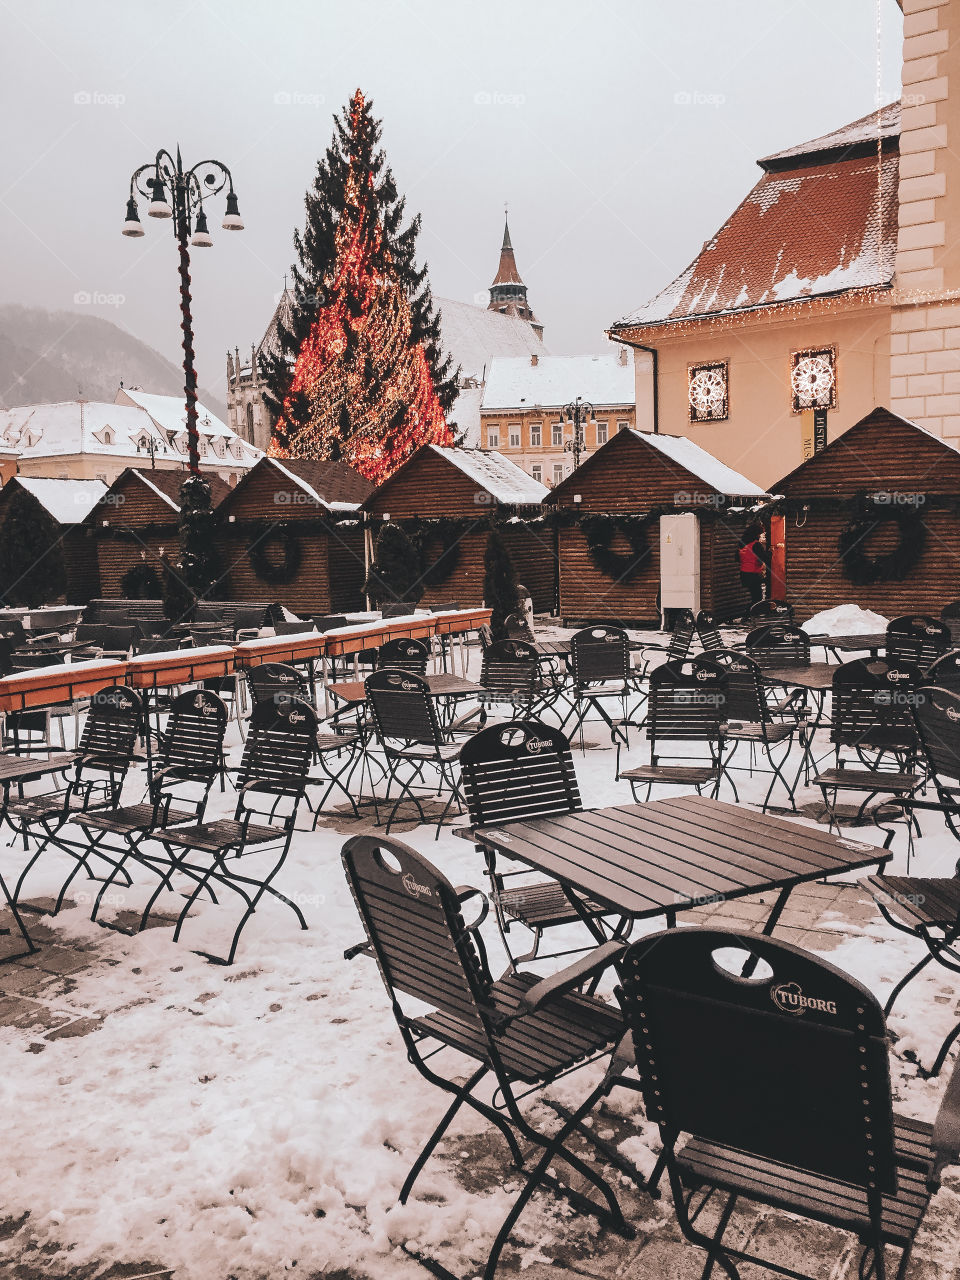 December vibe in Transylvania